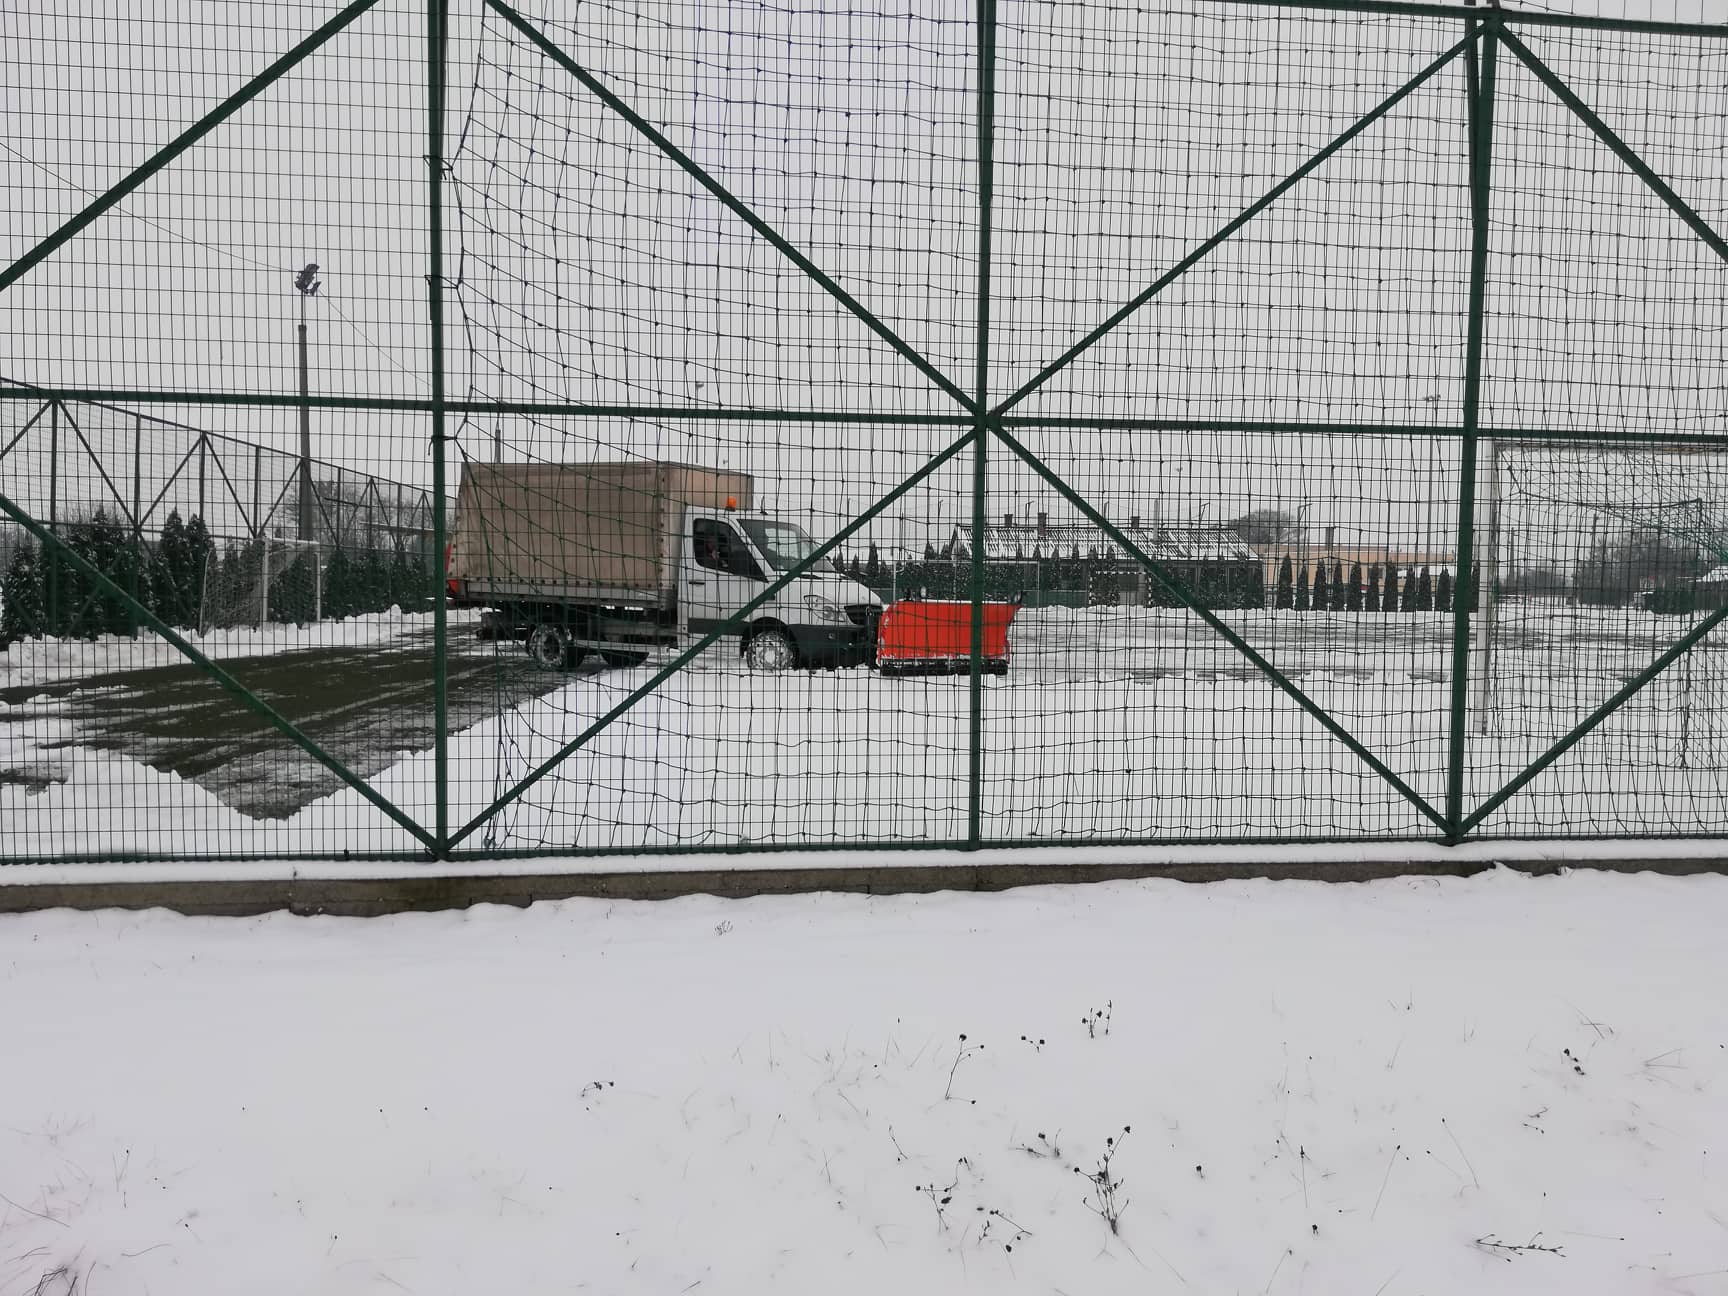 Nagykátát is ellepte a hó, de a fideszes önkormányzat hókotrói inkább a műfüves focipályát tisztítják